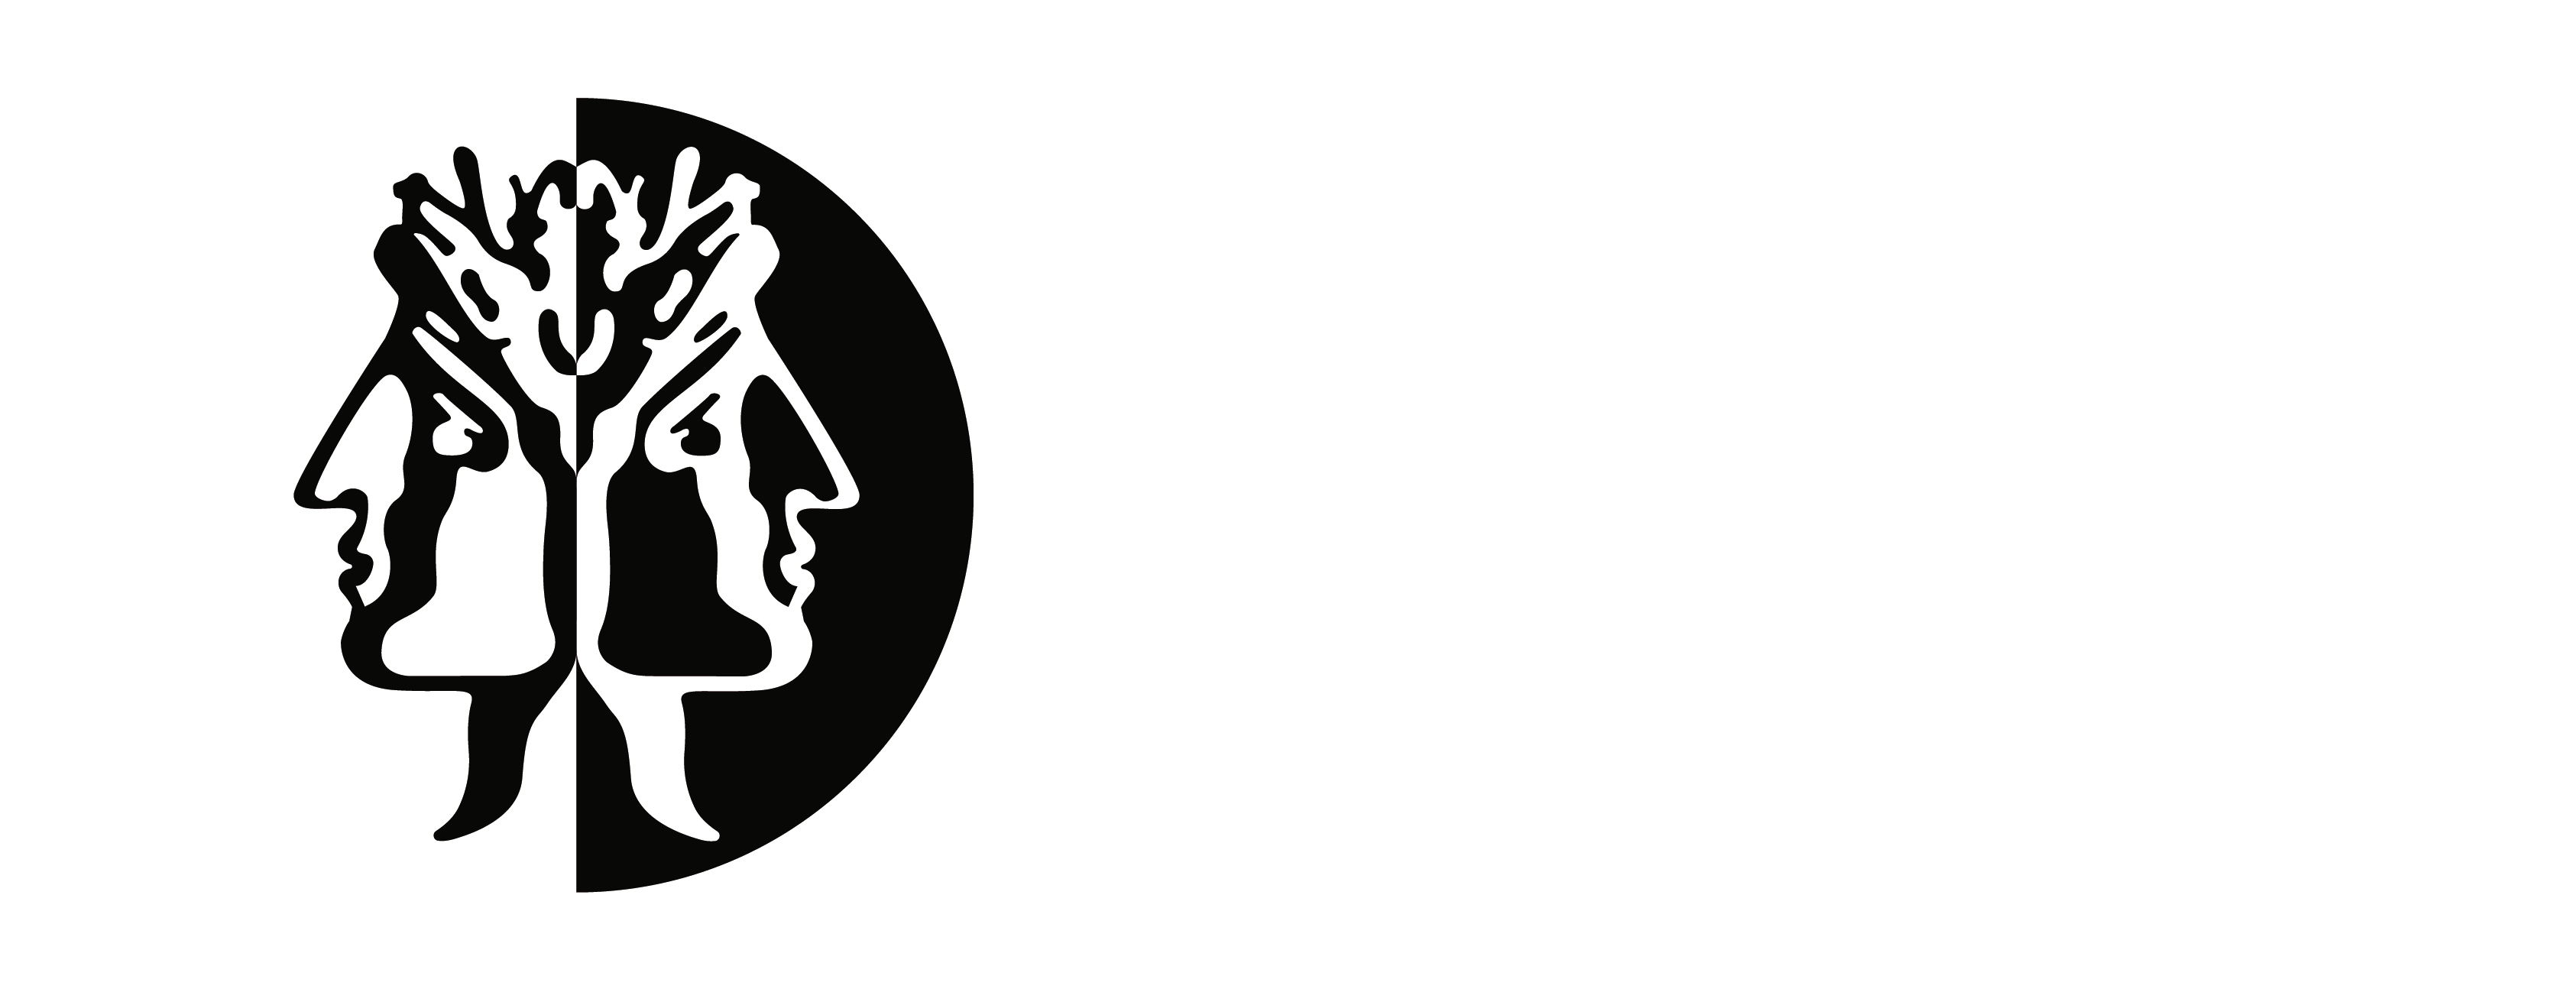 Logotipo secundario, en blanco, de Janus Management